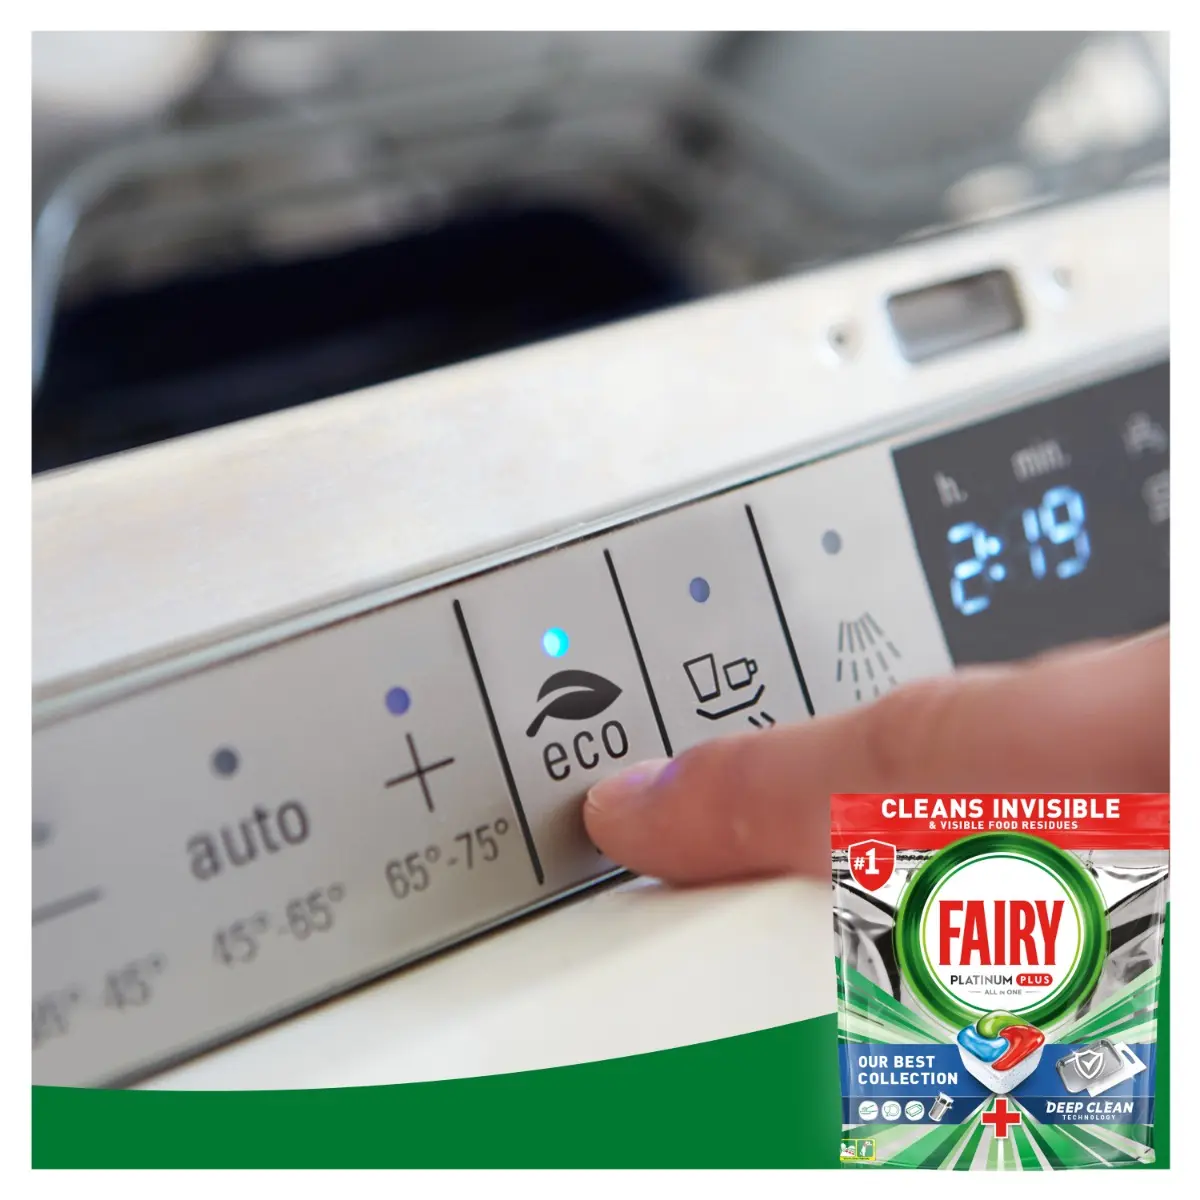 Detergent Fairy Platinum Plus Deep Clean pentru masina de spalat vase, 50 spalari